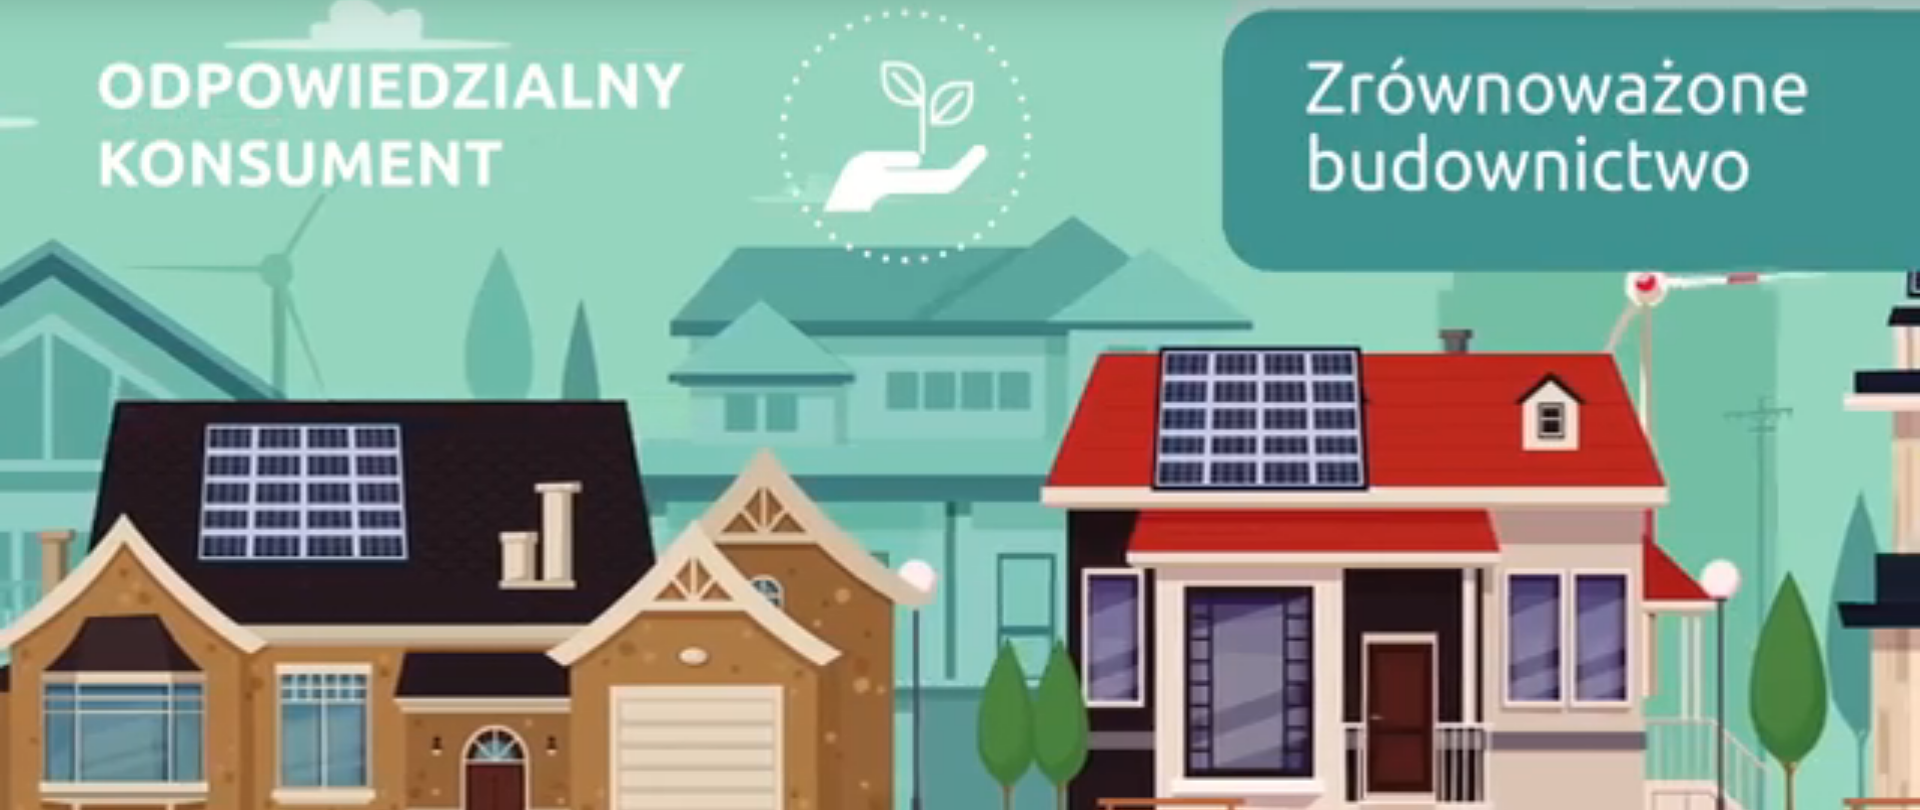 grafika przedstawia budynki, nad którymi jest napis "Odpowiedzialny konsument: Zrównoważone budownictwo".